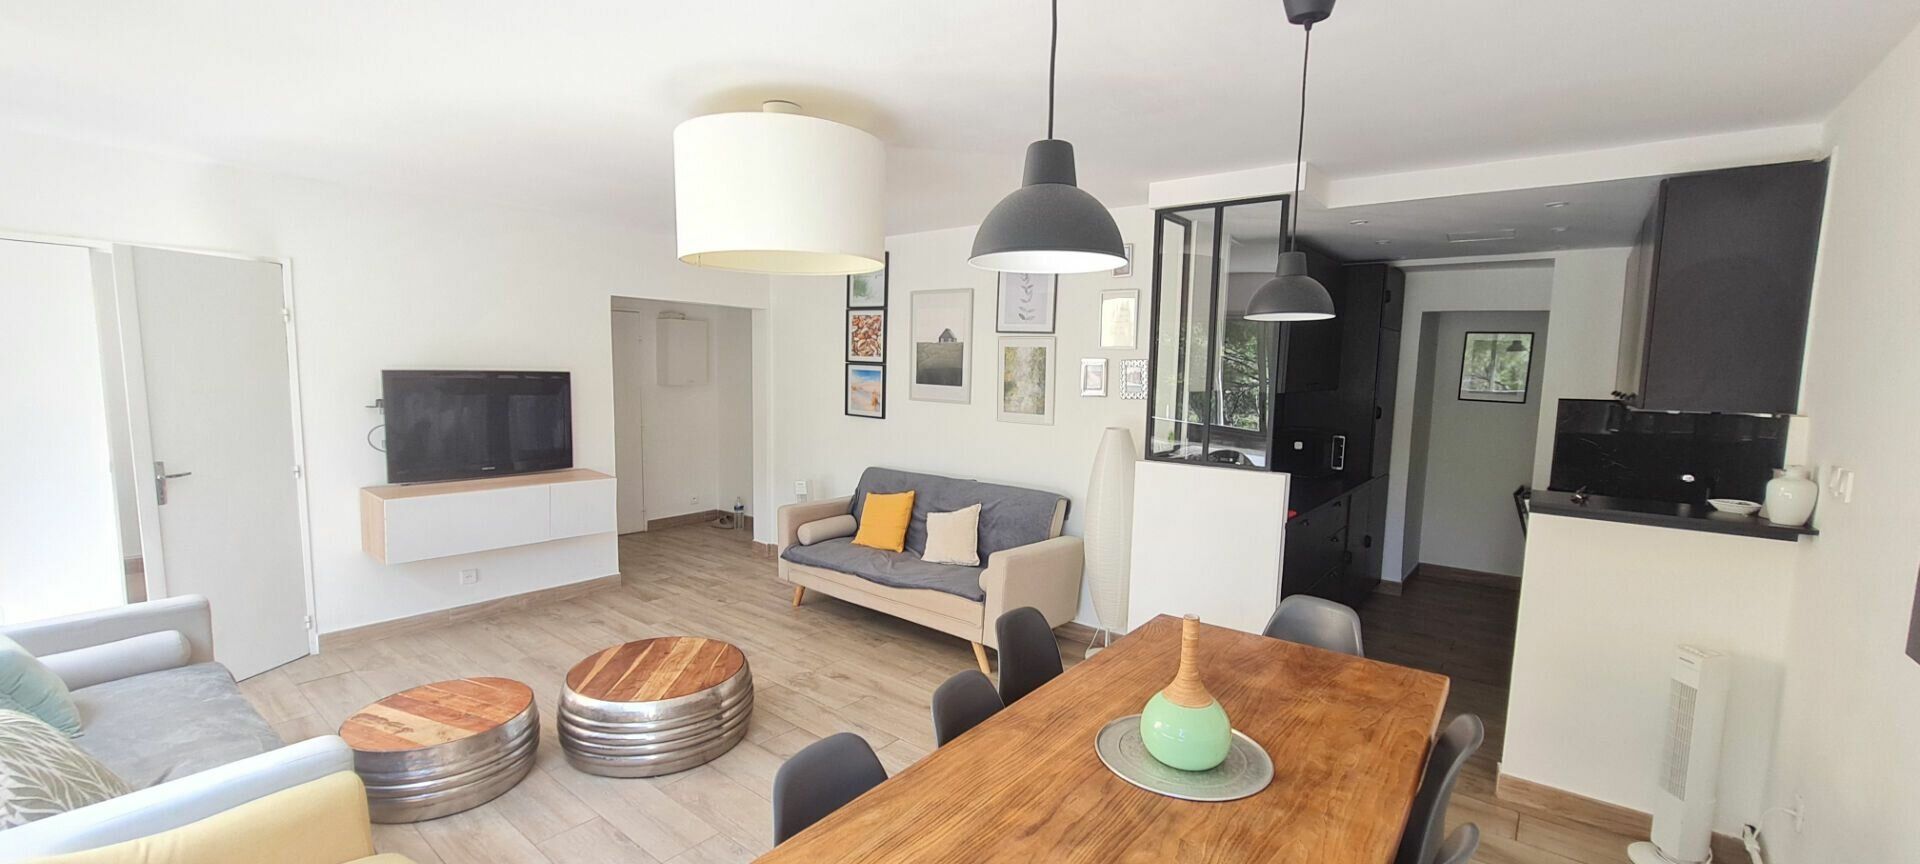 Appartement à vendre 3 75m2 à Saint-Mandrier-sur-Mer vignette-2